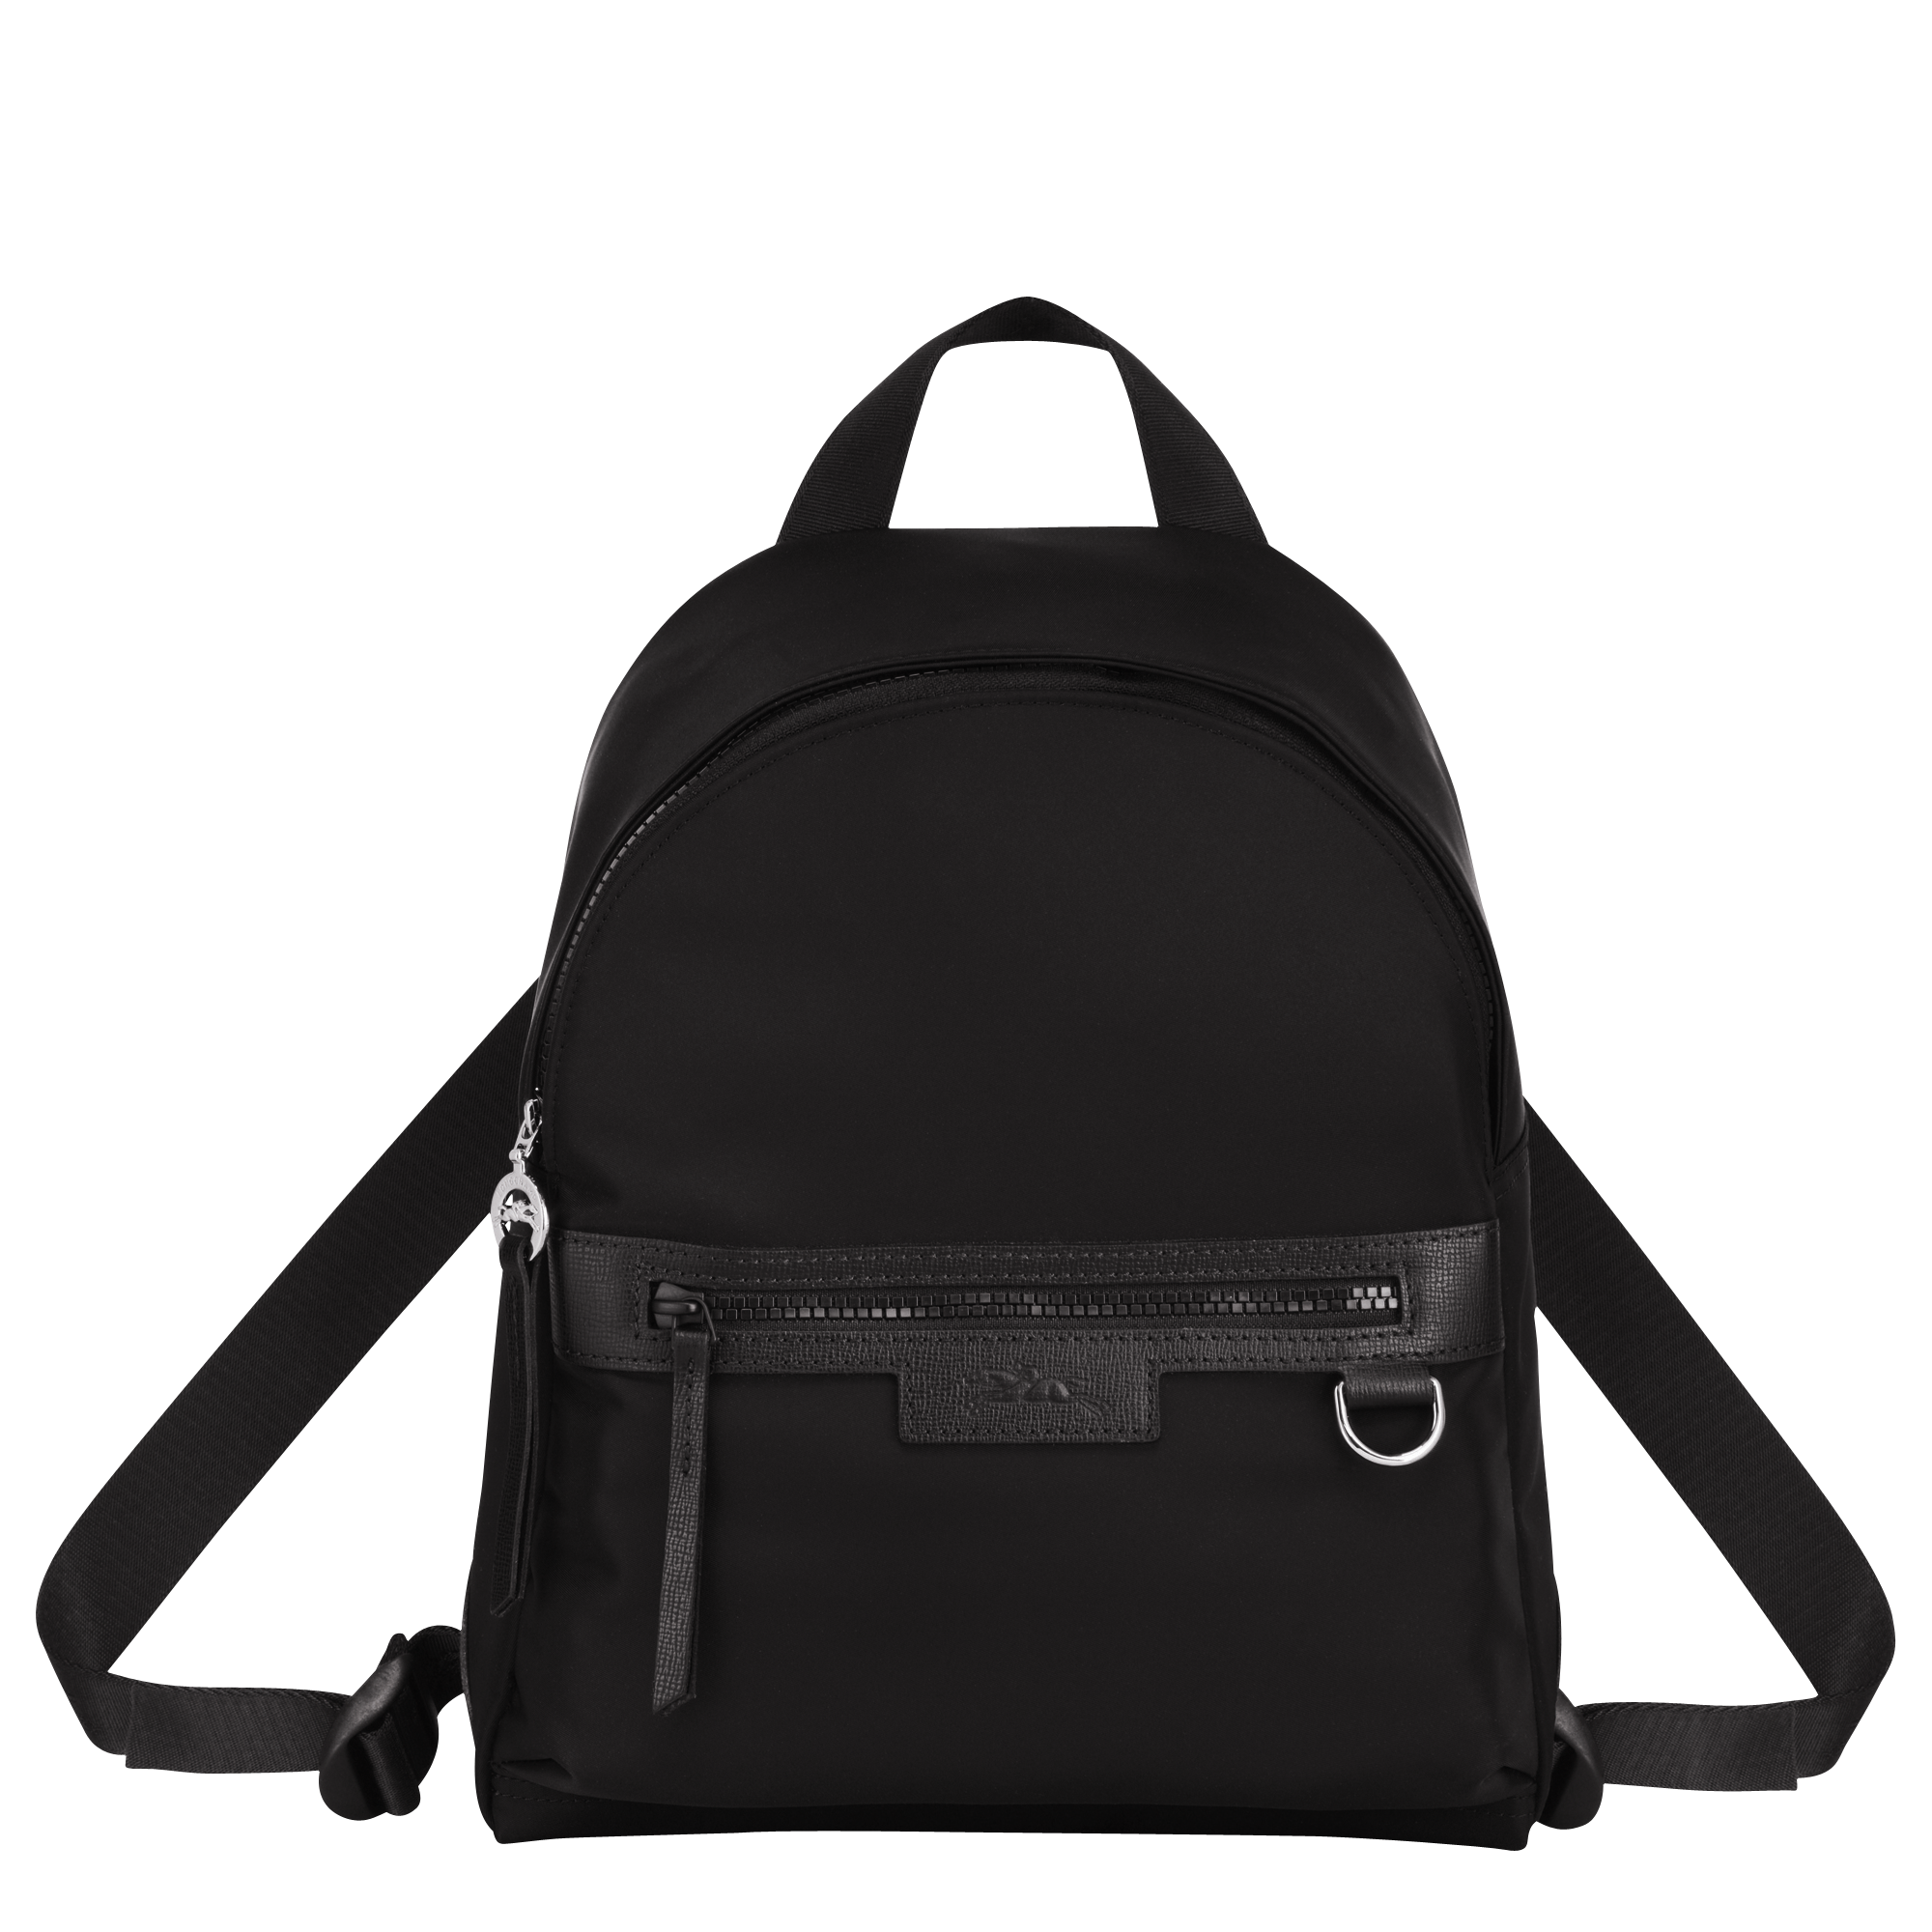 longchamp backpack neo